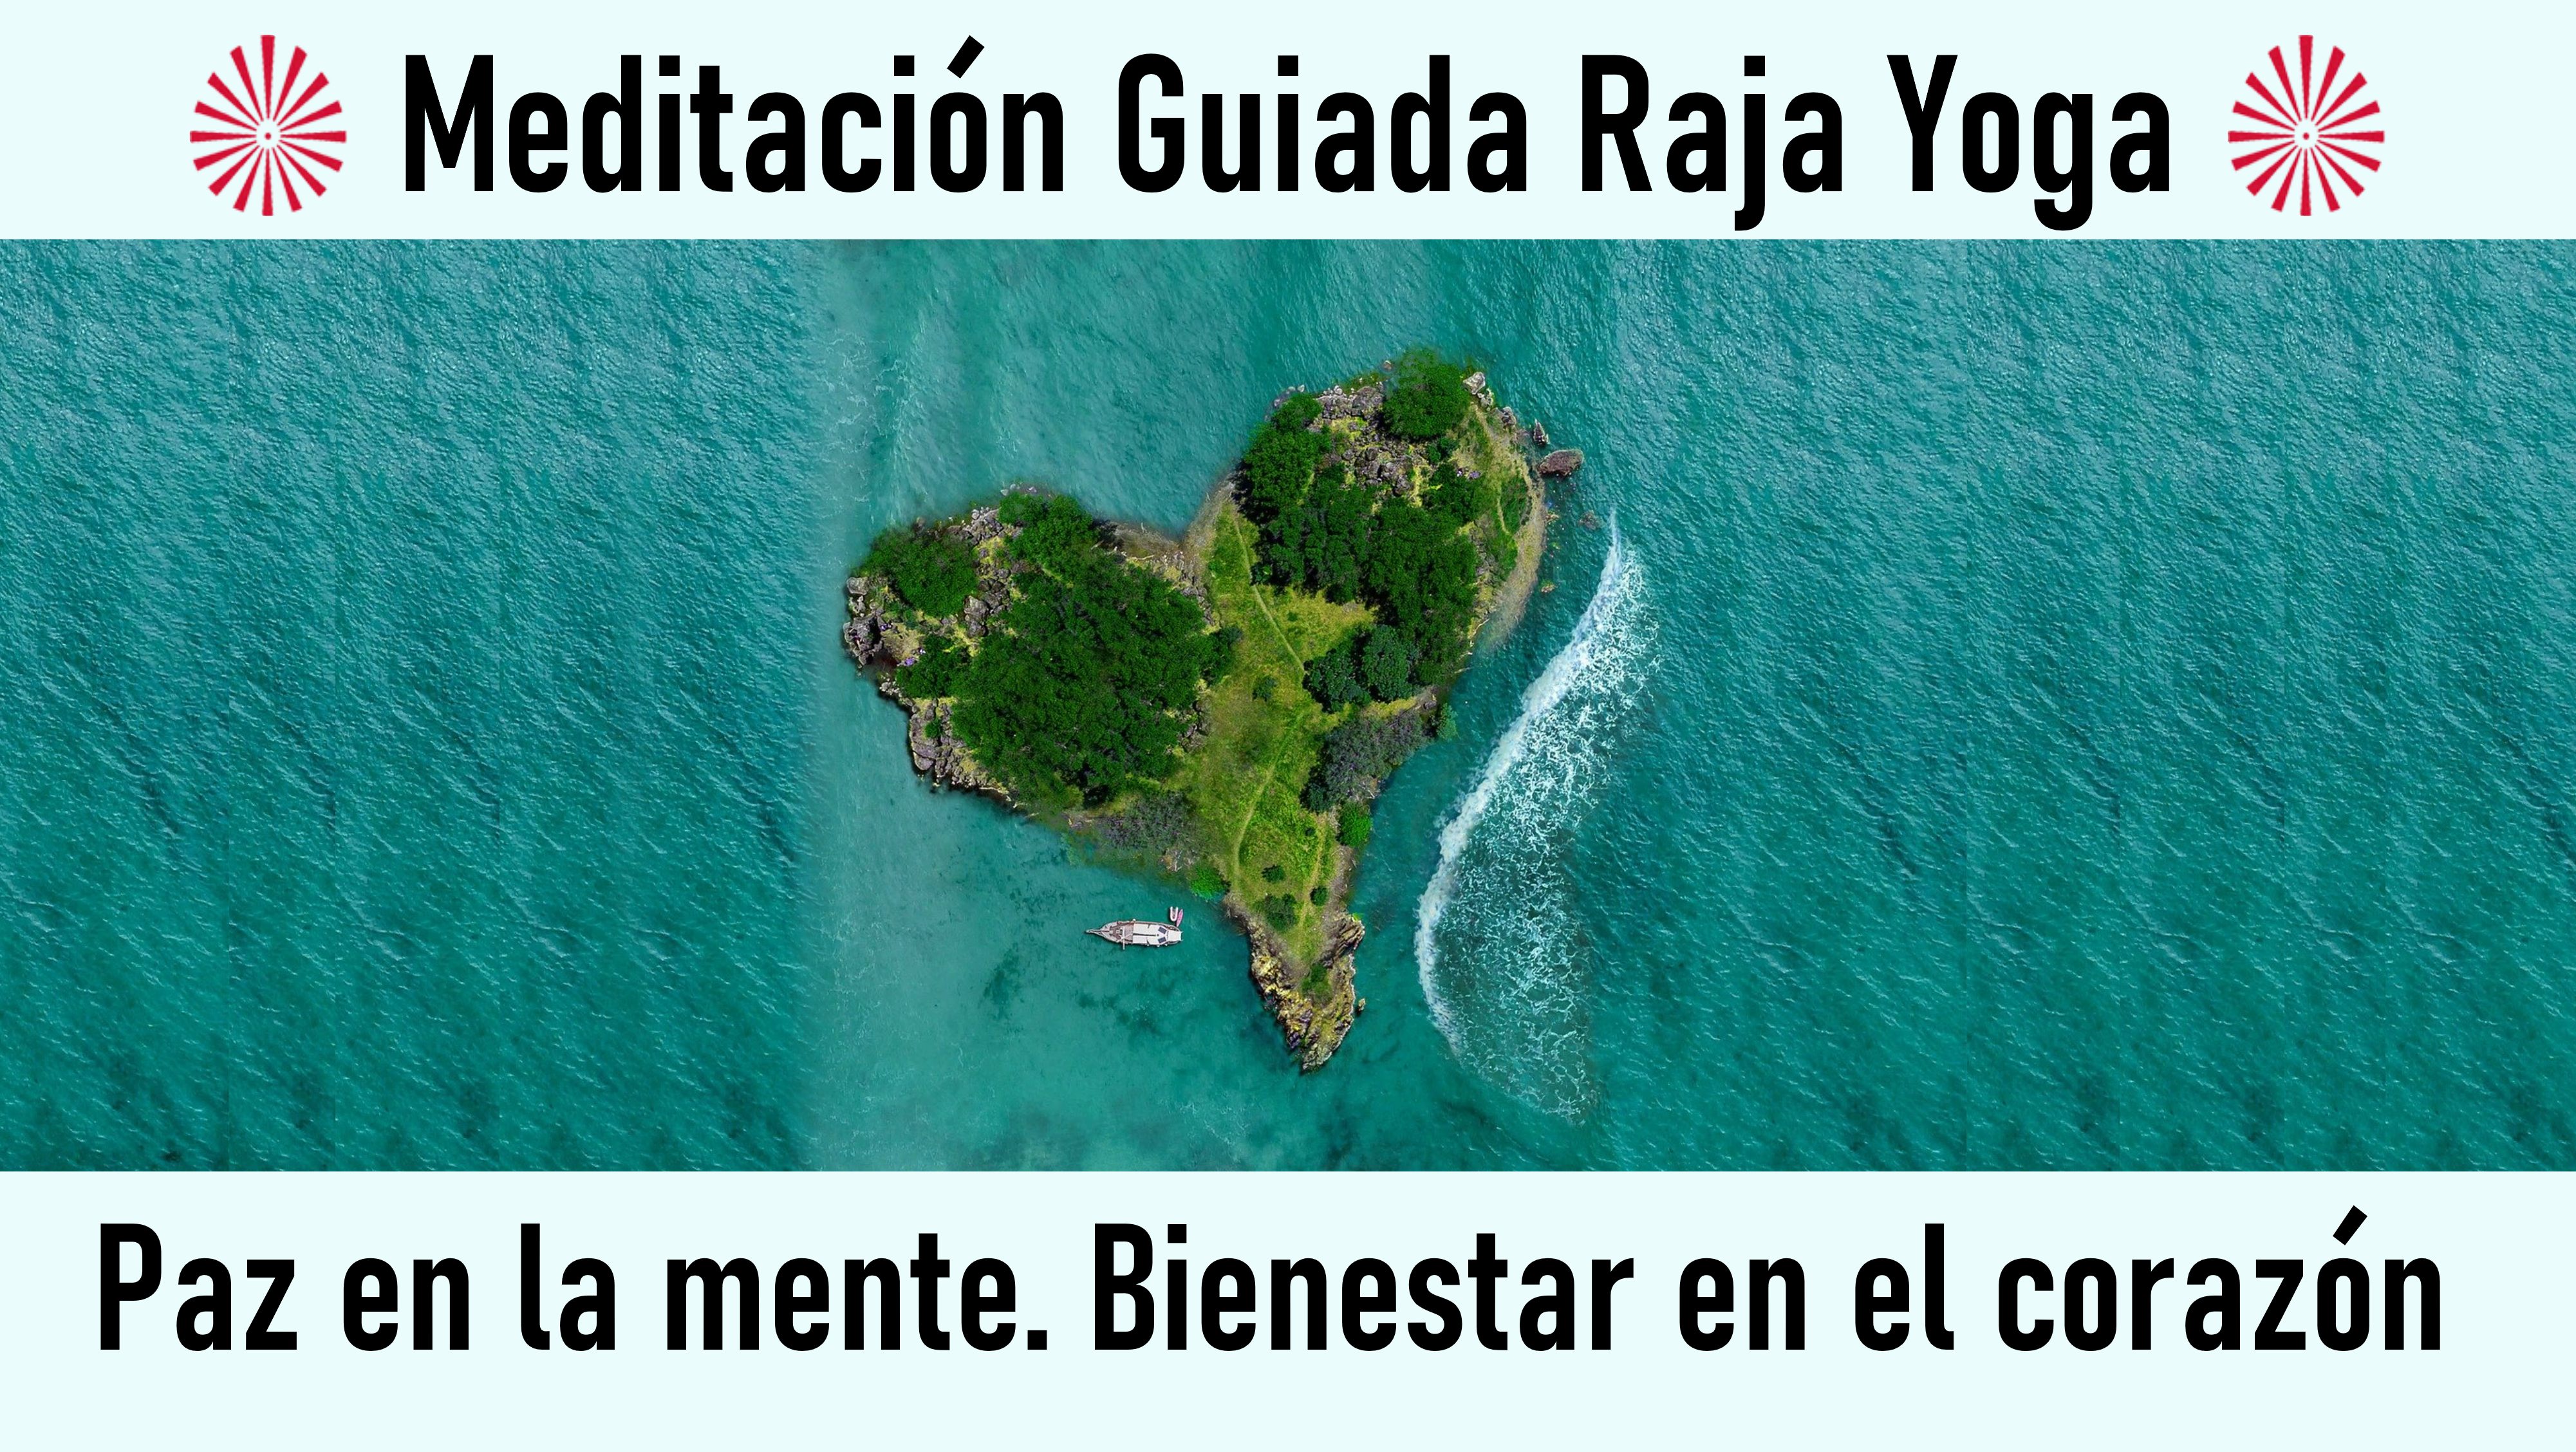 Meditación Raja Yoga: “Paz en la mente. Bienestar en el corazón (26 Julio 2020) On-line desde Valencia